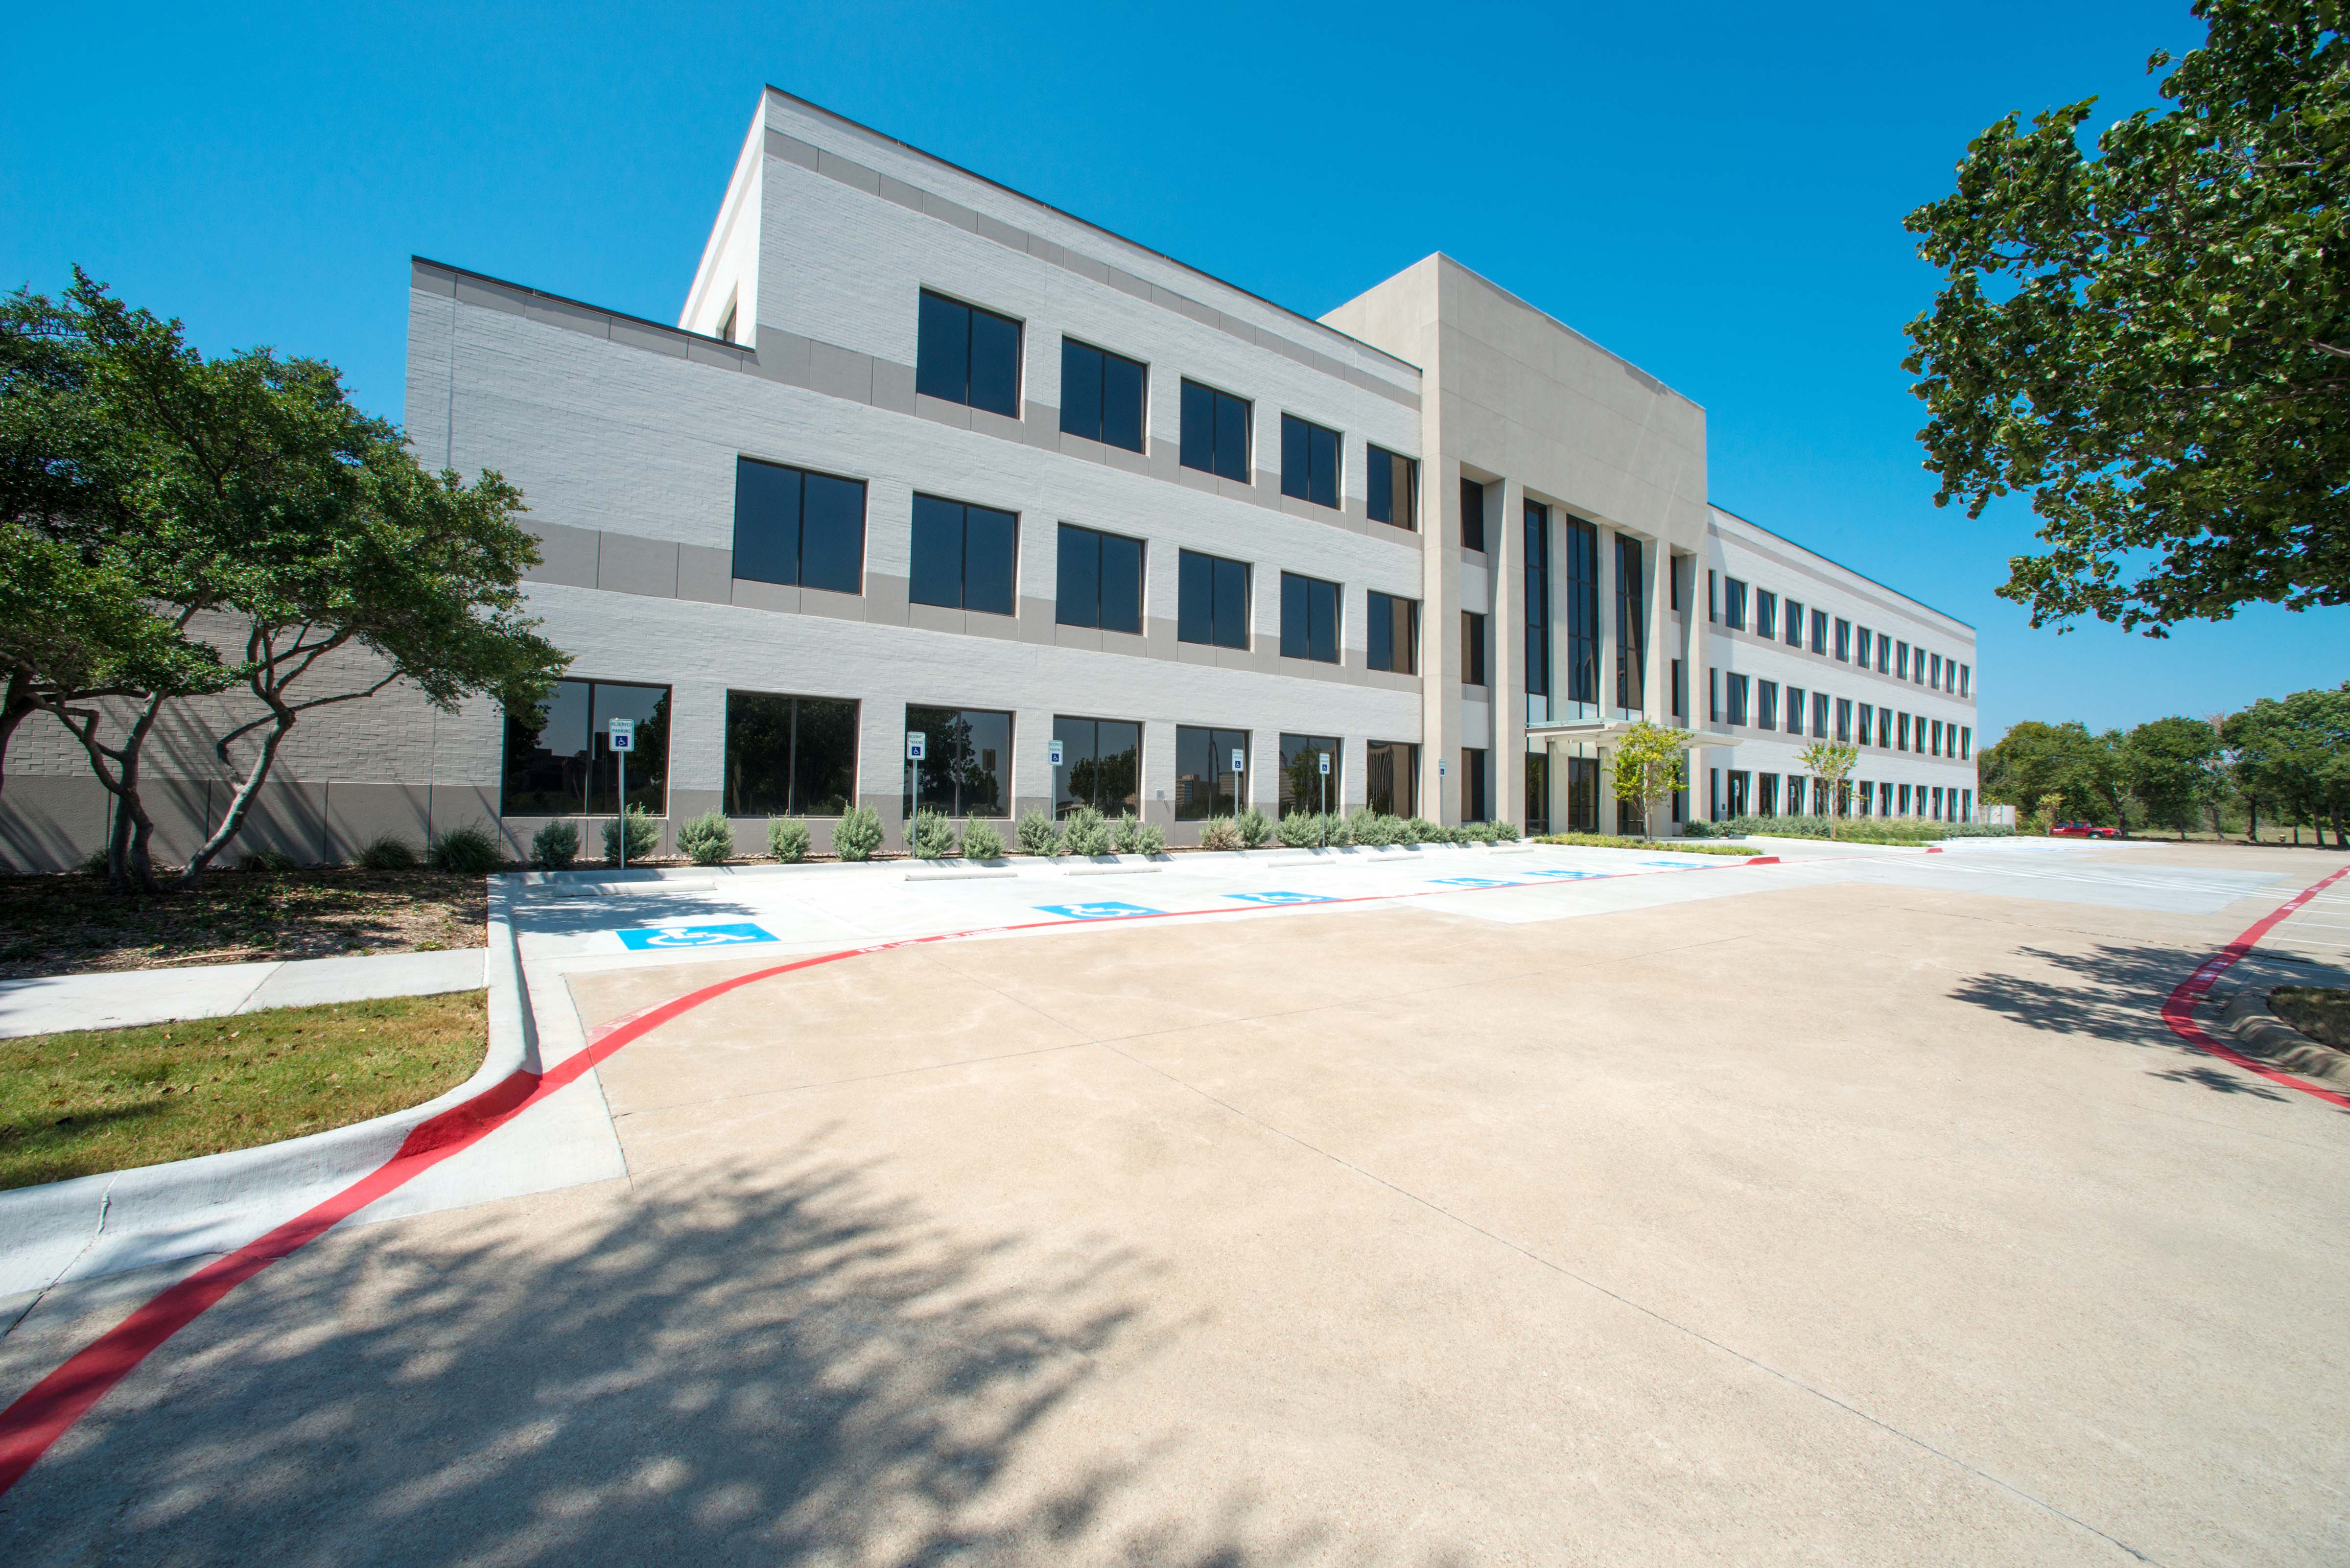 The new location for WCU-Dallas